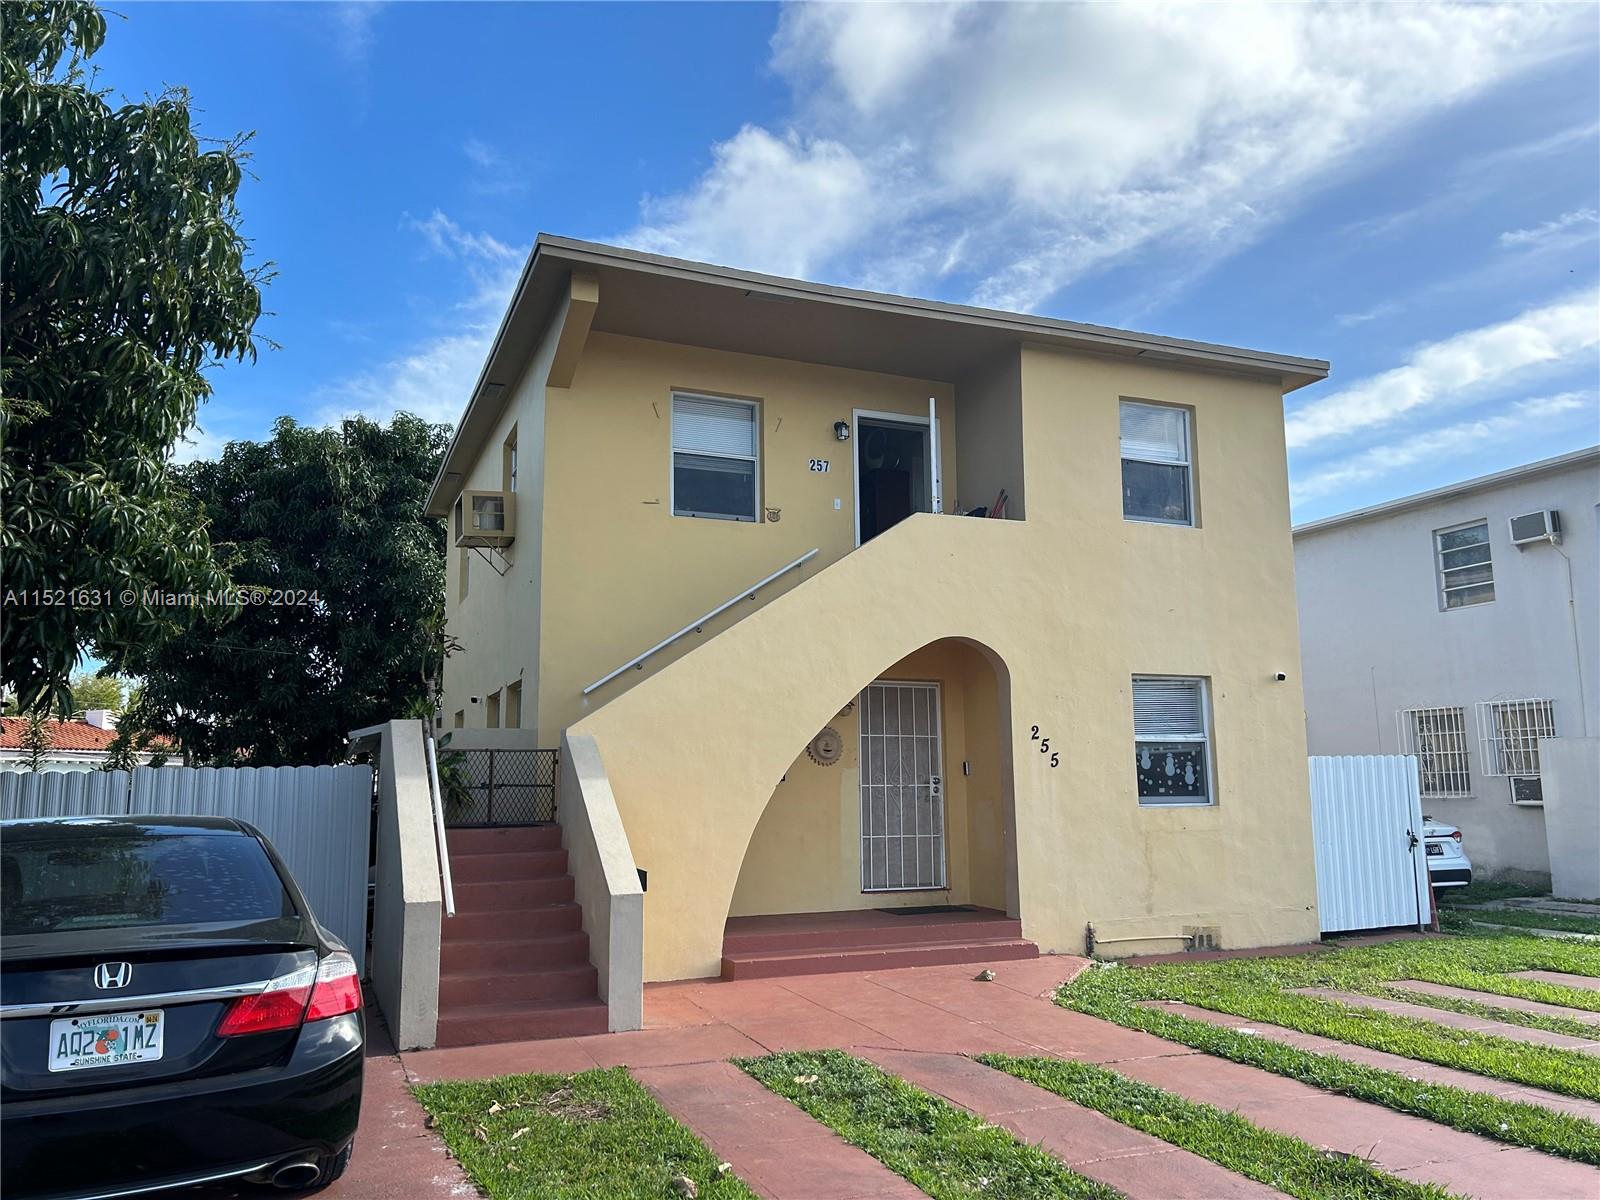 Rental Property at 255 Beacom Blvd Blvd, Miami, Broward County, Florida -  - $850,000 MO.